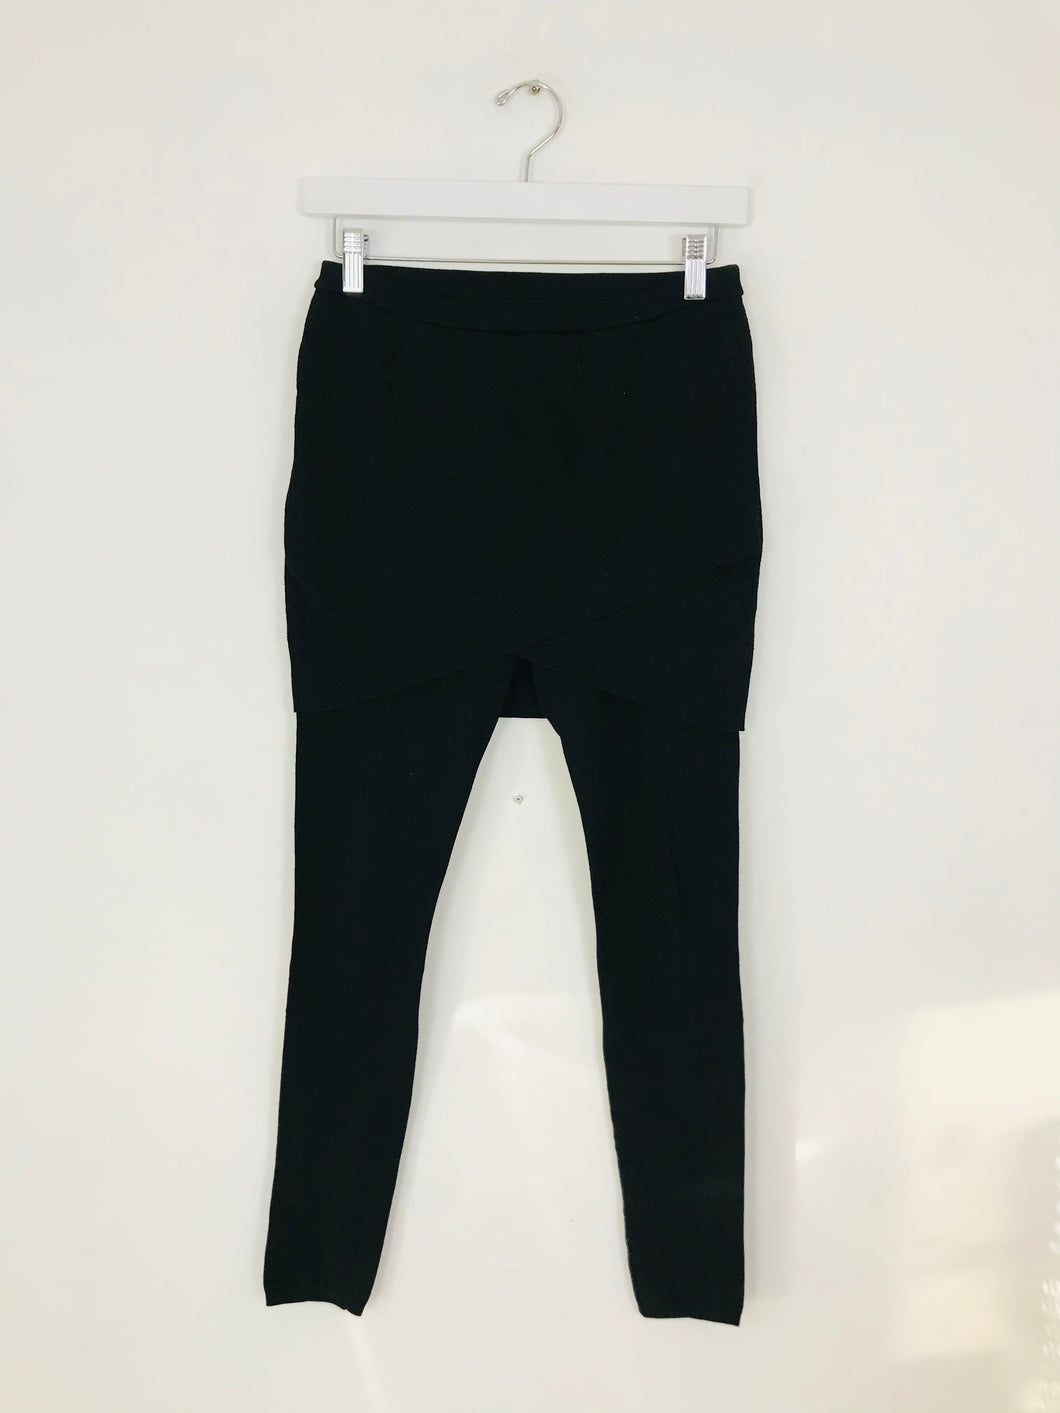 AllSaints Women’s Knit Leggings With Skirt | M UK10-12 | Black